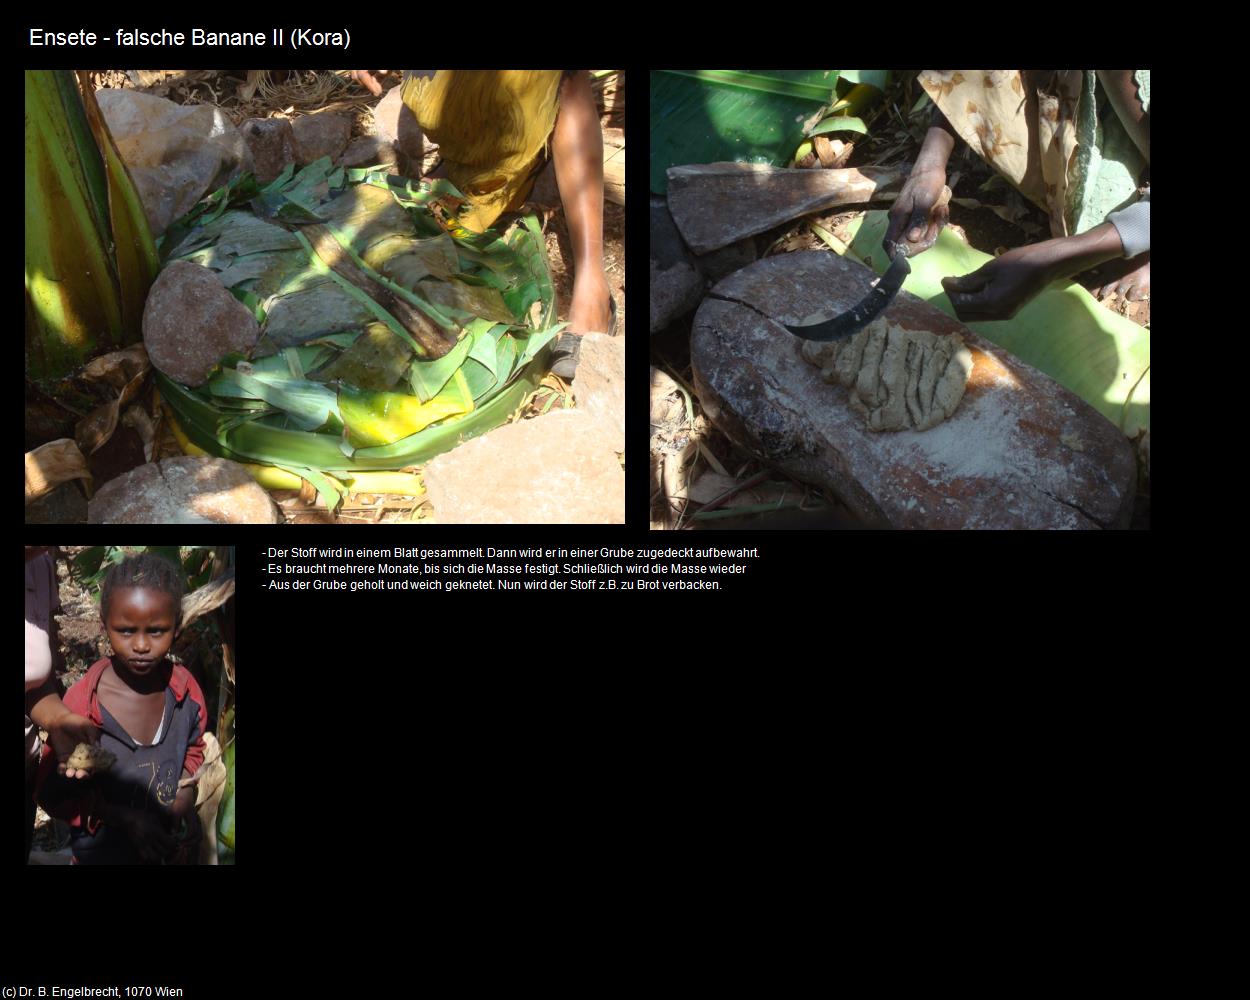 Ensete - falsche Banane II (Kora) in Äthiopien